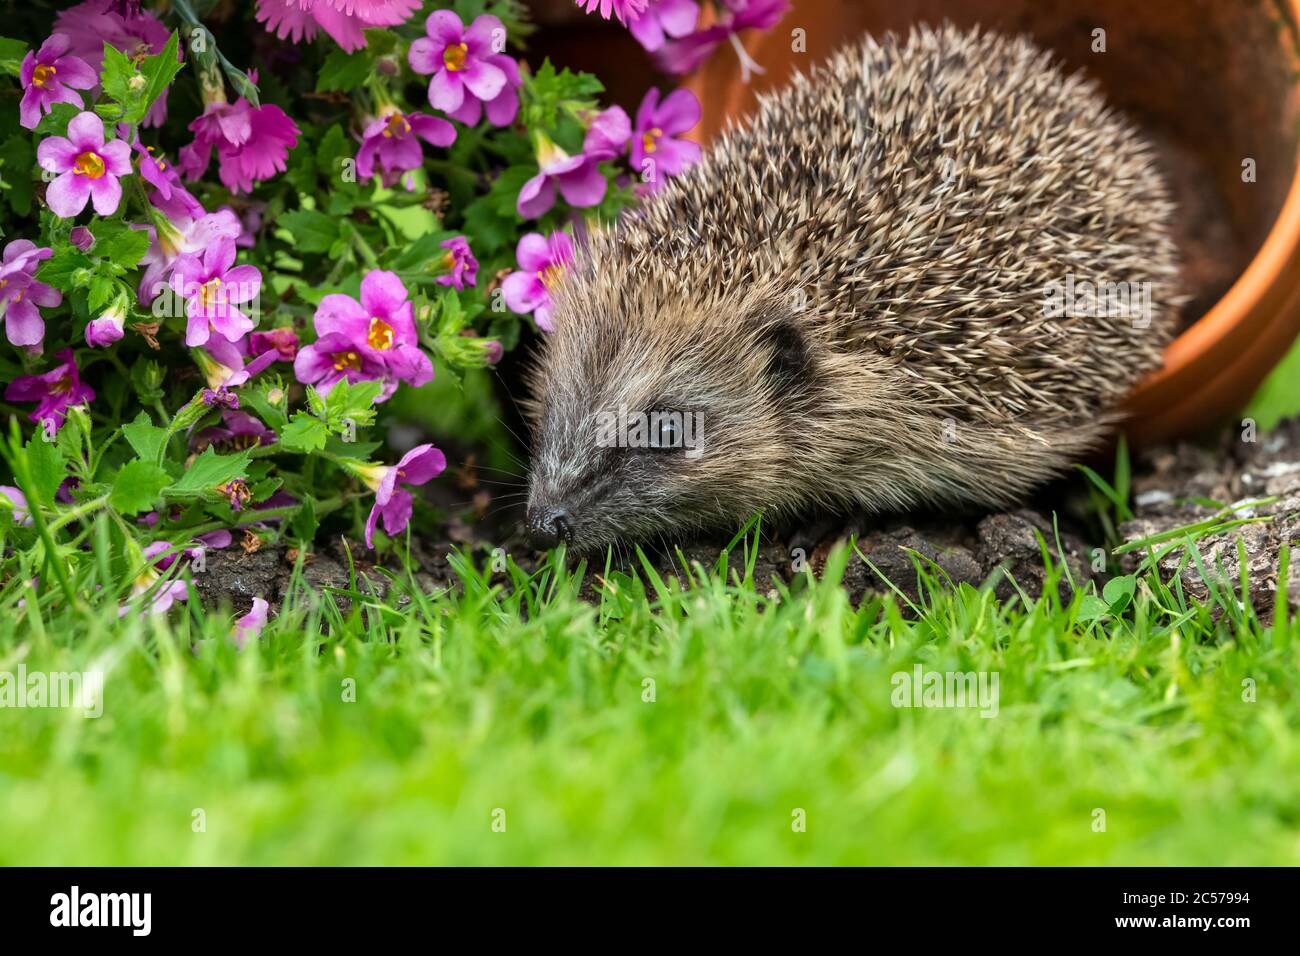 Hedgehog (Nombre científico: Erinace europaeus) Hedgehog juvenil, salvaje, europeo en verano, forrajeo en el jardín con flores de colores y maceta vegetal Foto de stock